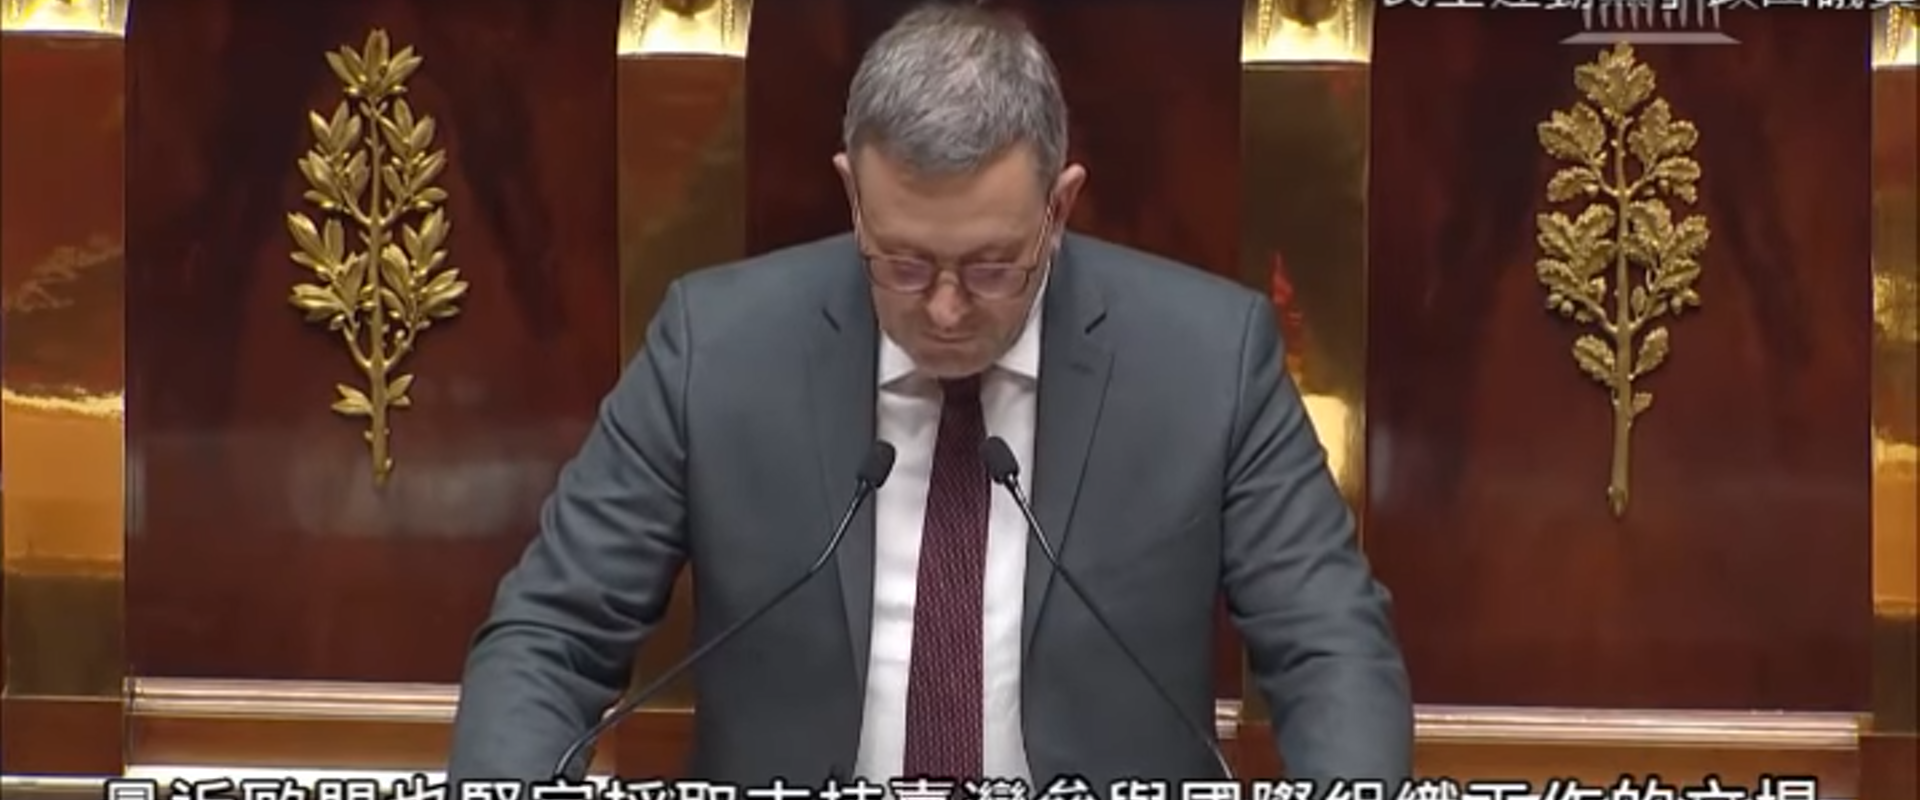 法國國民議會以39票贊成、2票反對、3票棄權通過支持台灣參與國際組織決議案。圖/翻攝自網路